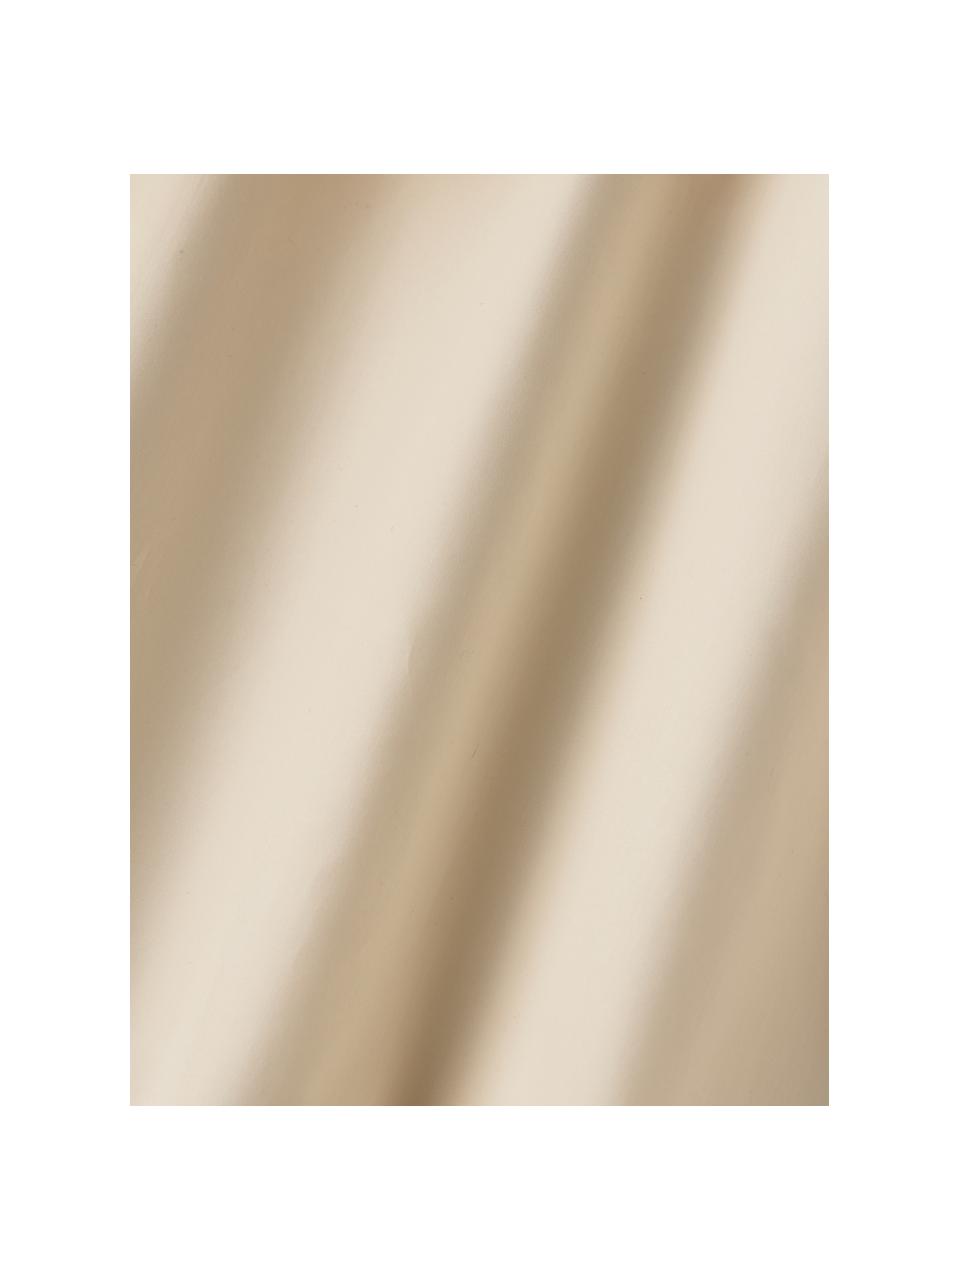 Sábana bajera de sobrecolchón de percal Elsie, Beige, Cama 180 cm (180 x 200 x 15 cm)